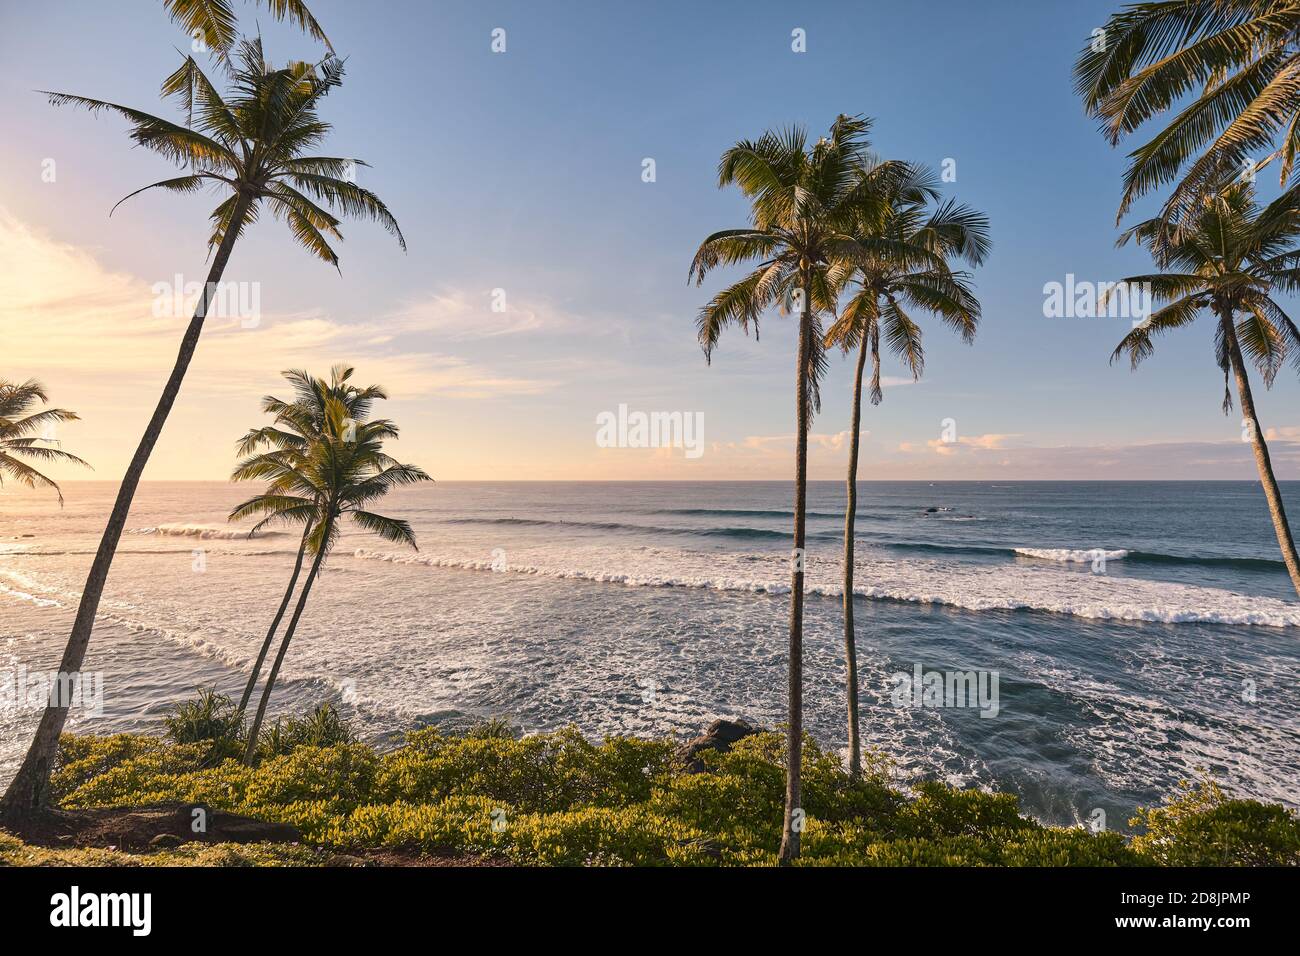 Spiaggia tropicale con palme da cocco al tramonto. Foto Stock